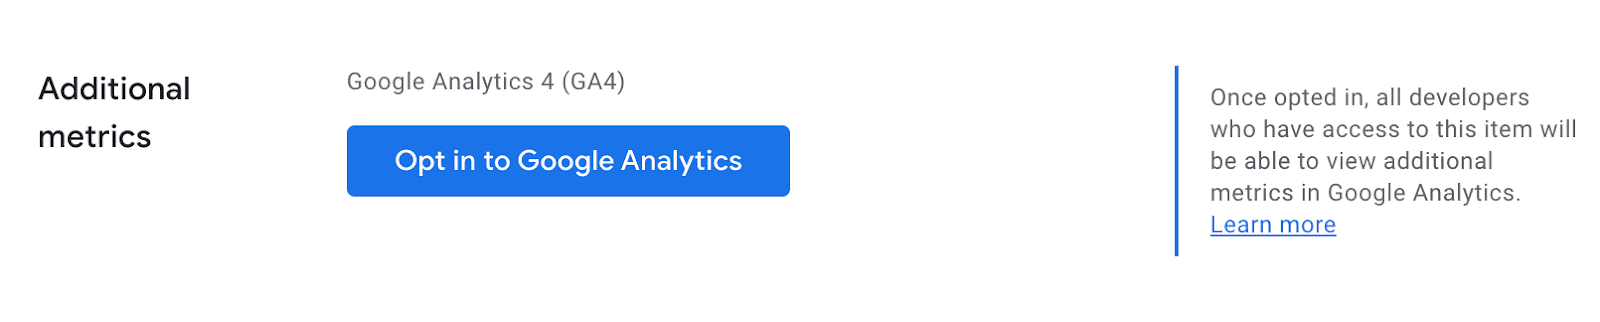 การเลือกใช้ UI ของ Google Analytics ในหน้าแดชบอร์ดสำหรับนักพัฒนาซอฟต์แวร์